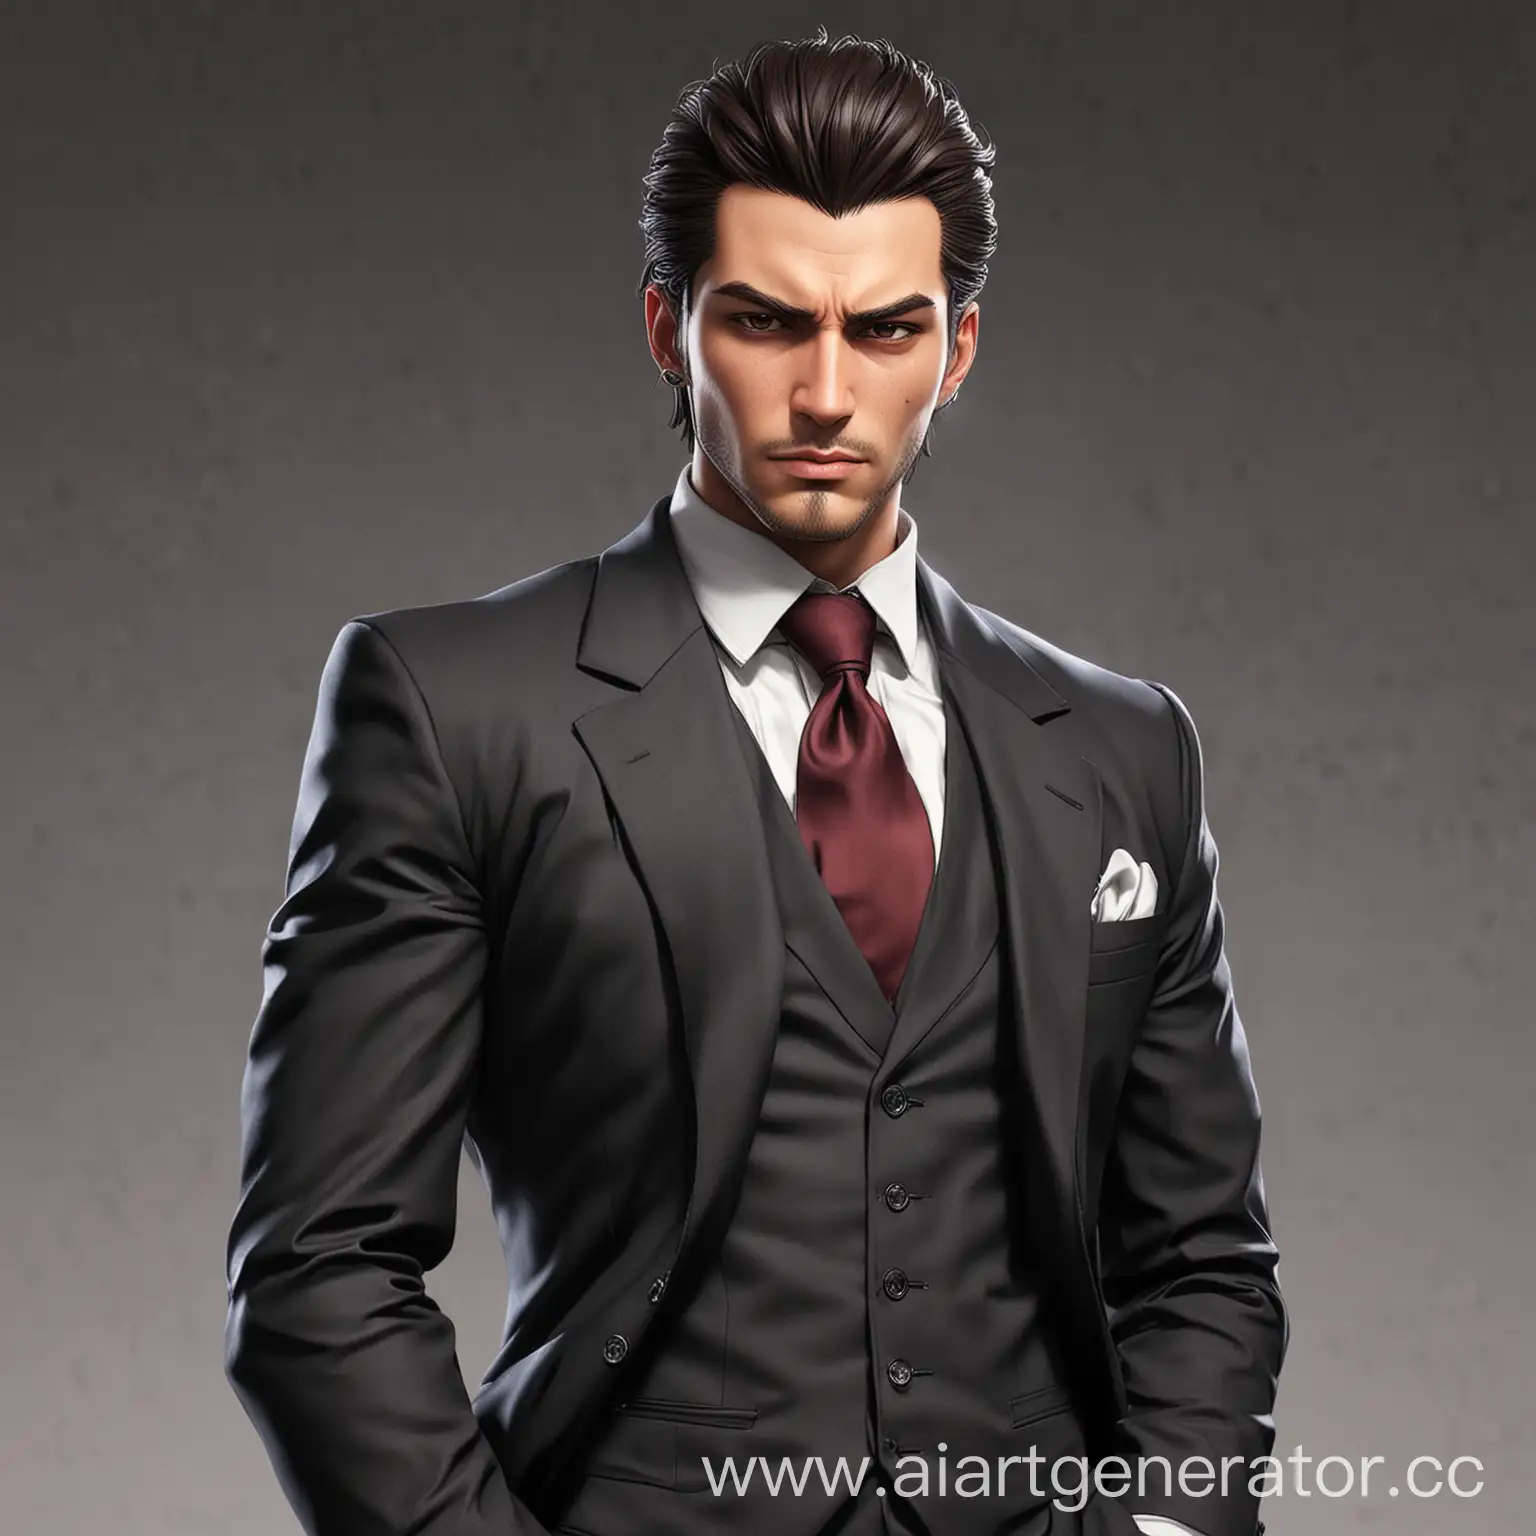 Anime-Mafia-Men-in-Suits-Brunet-Man-35-Years